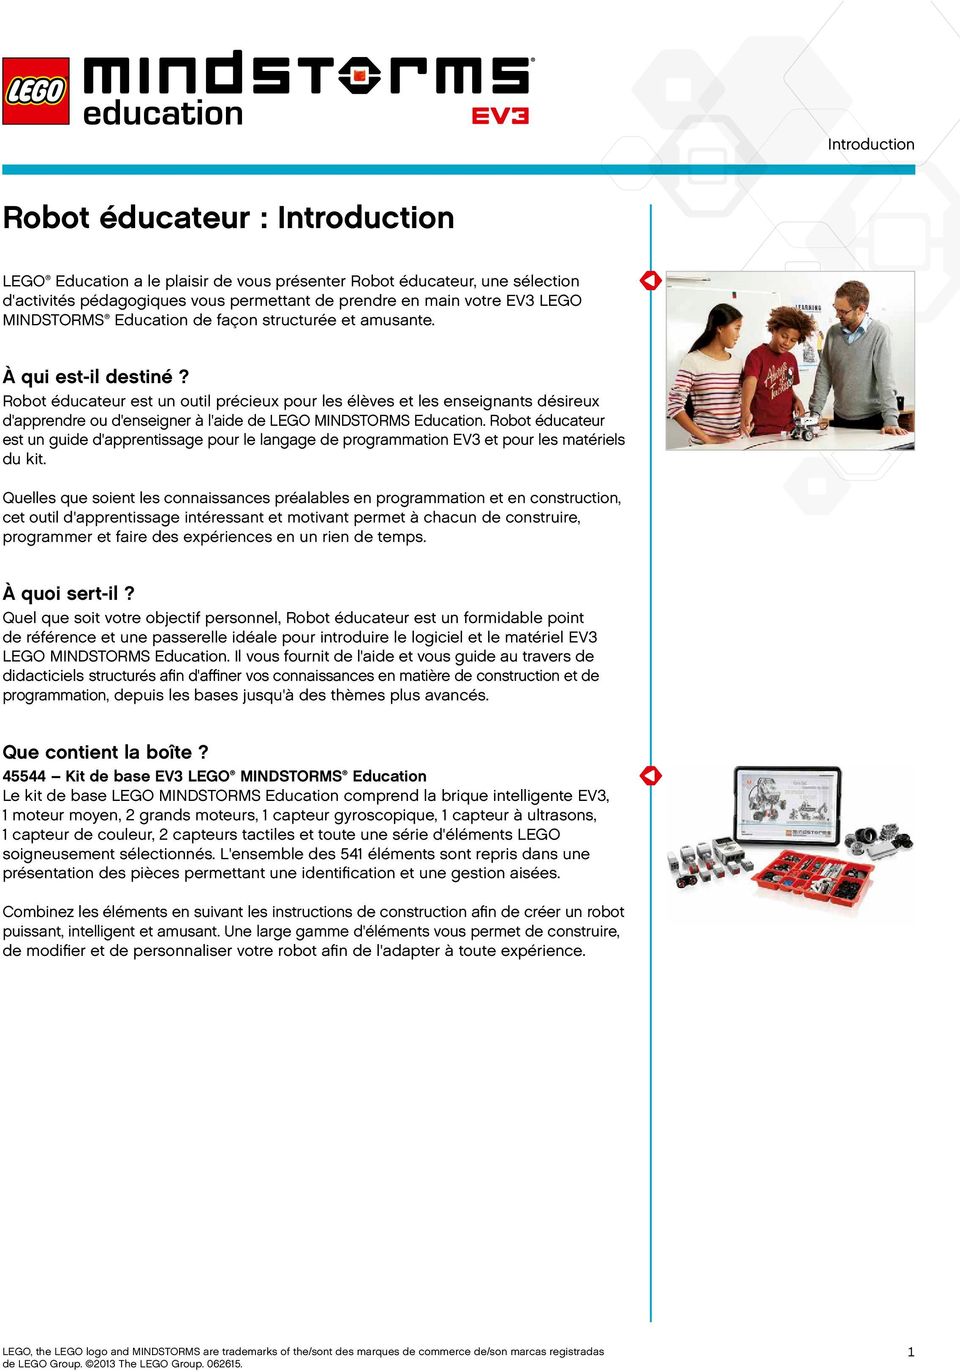 Robot éducateur est un guide d'apprentissage pour le langage de EV3 et pour les matériels du kit.